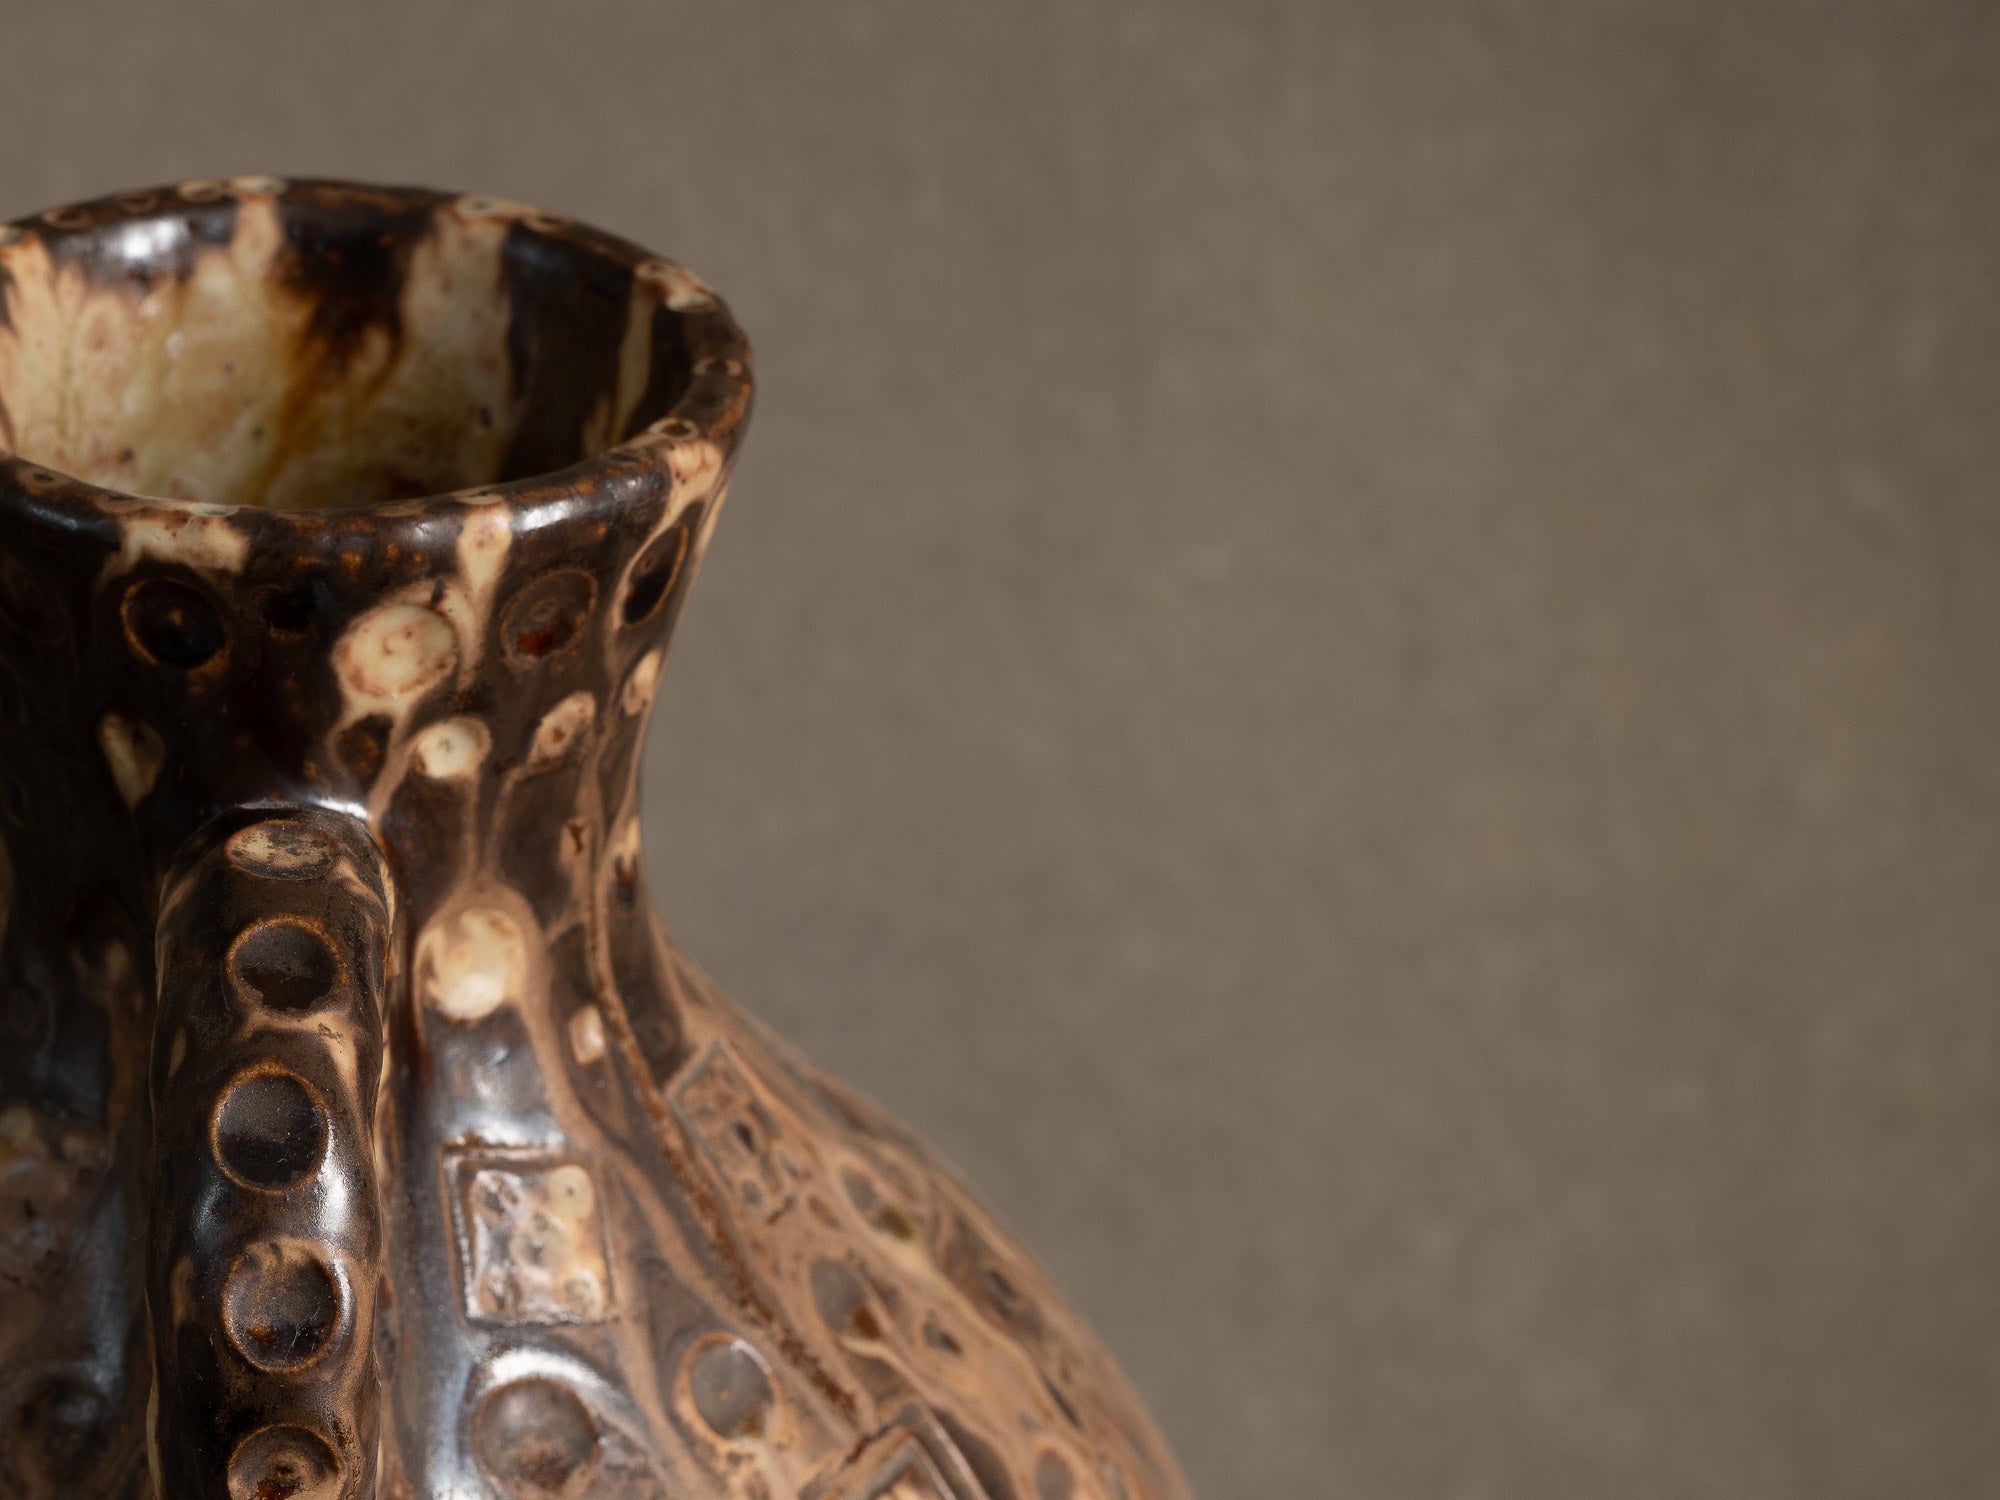 Vase ansé en grès de La Borne par Joseph Talbot, France (vers 1930)..Art Déco handled vase in La Borne stoneware by Joseph Talbot, France (circa 1930)